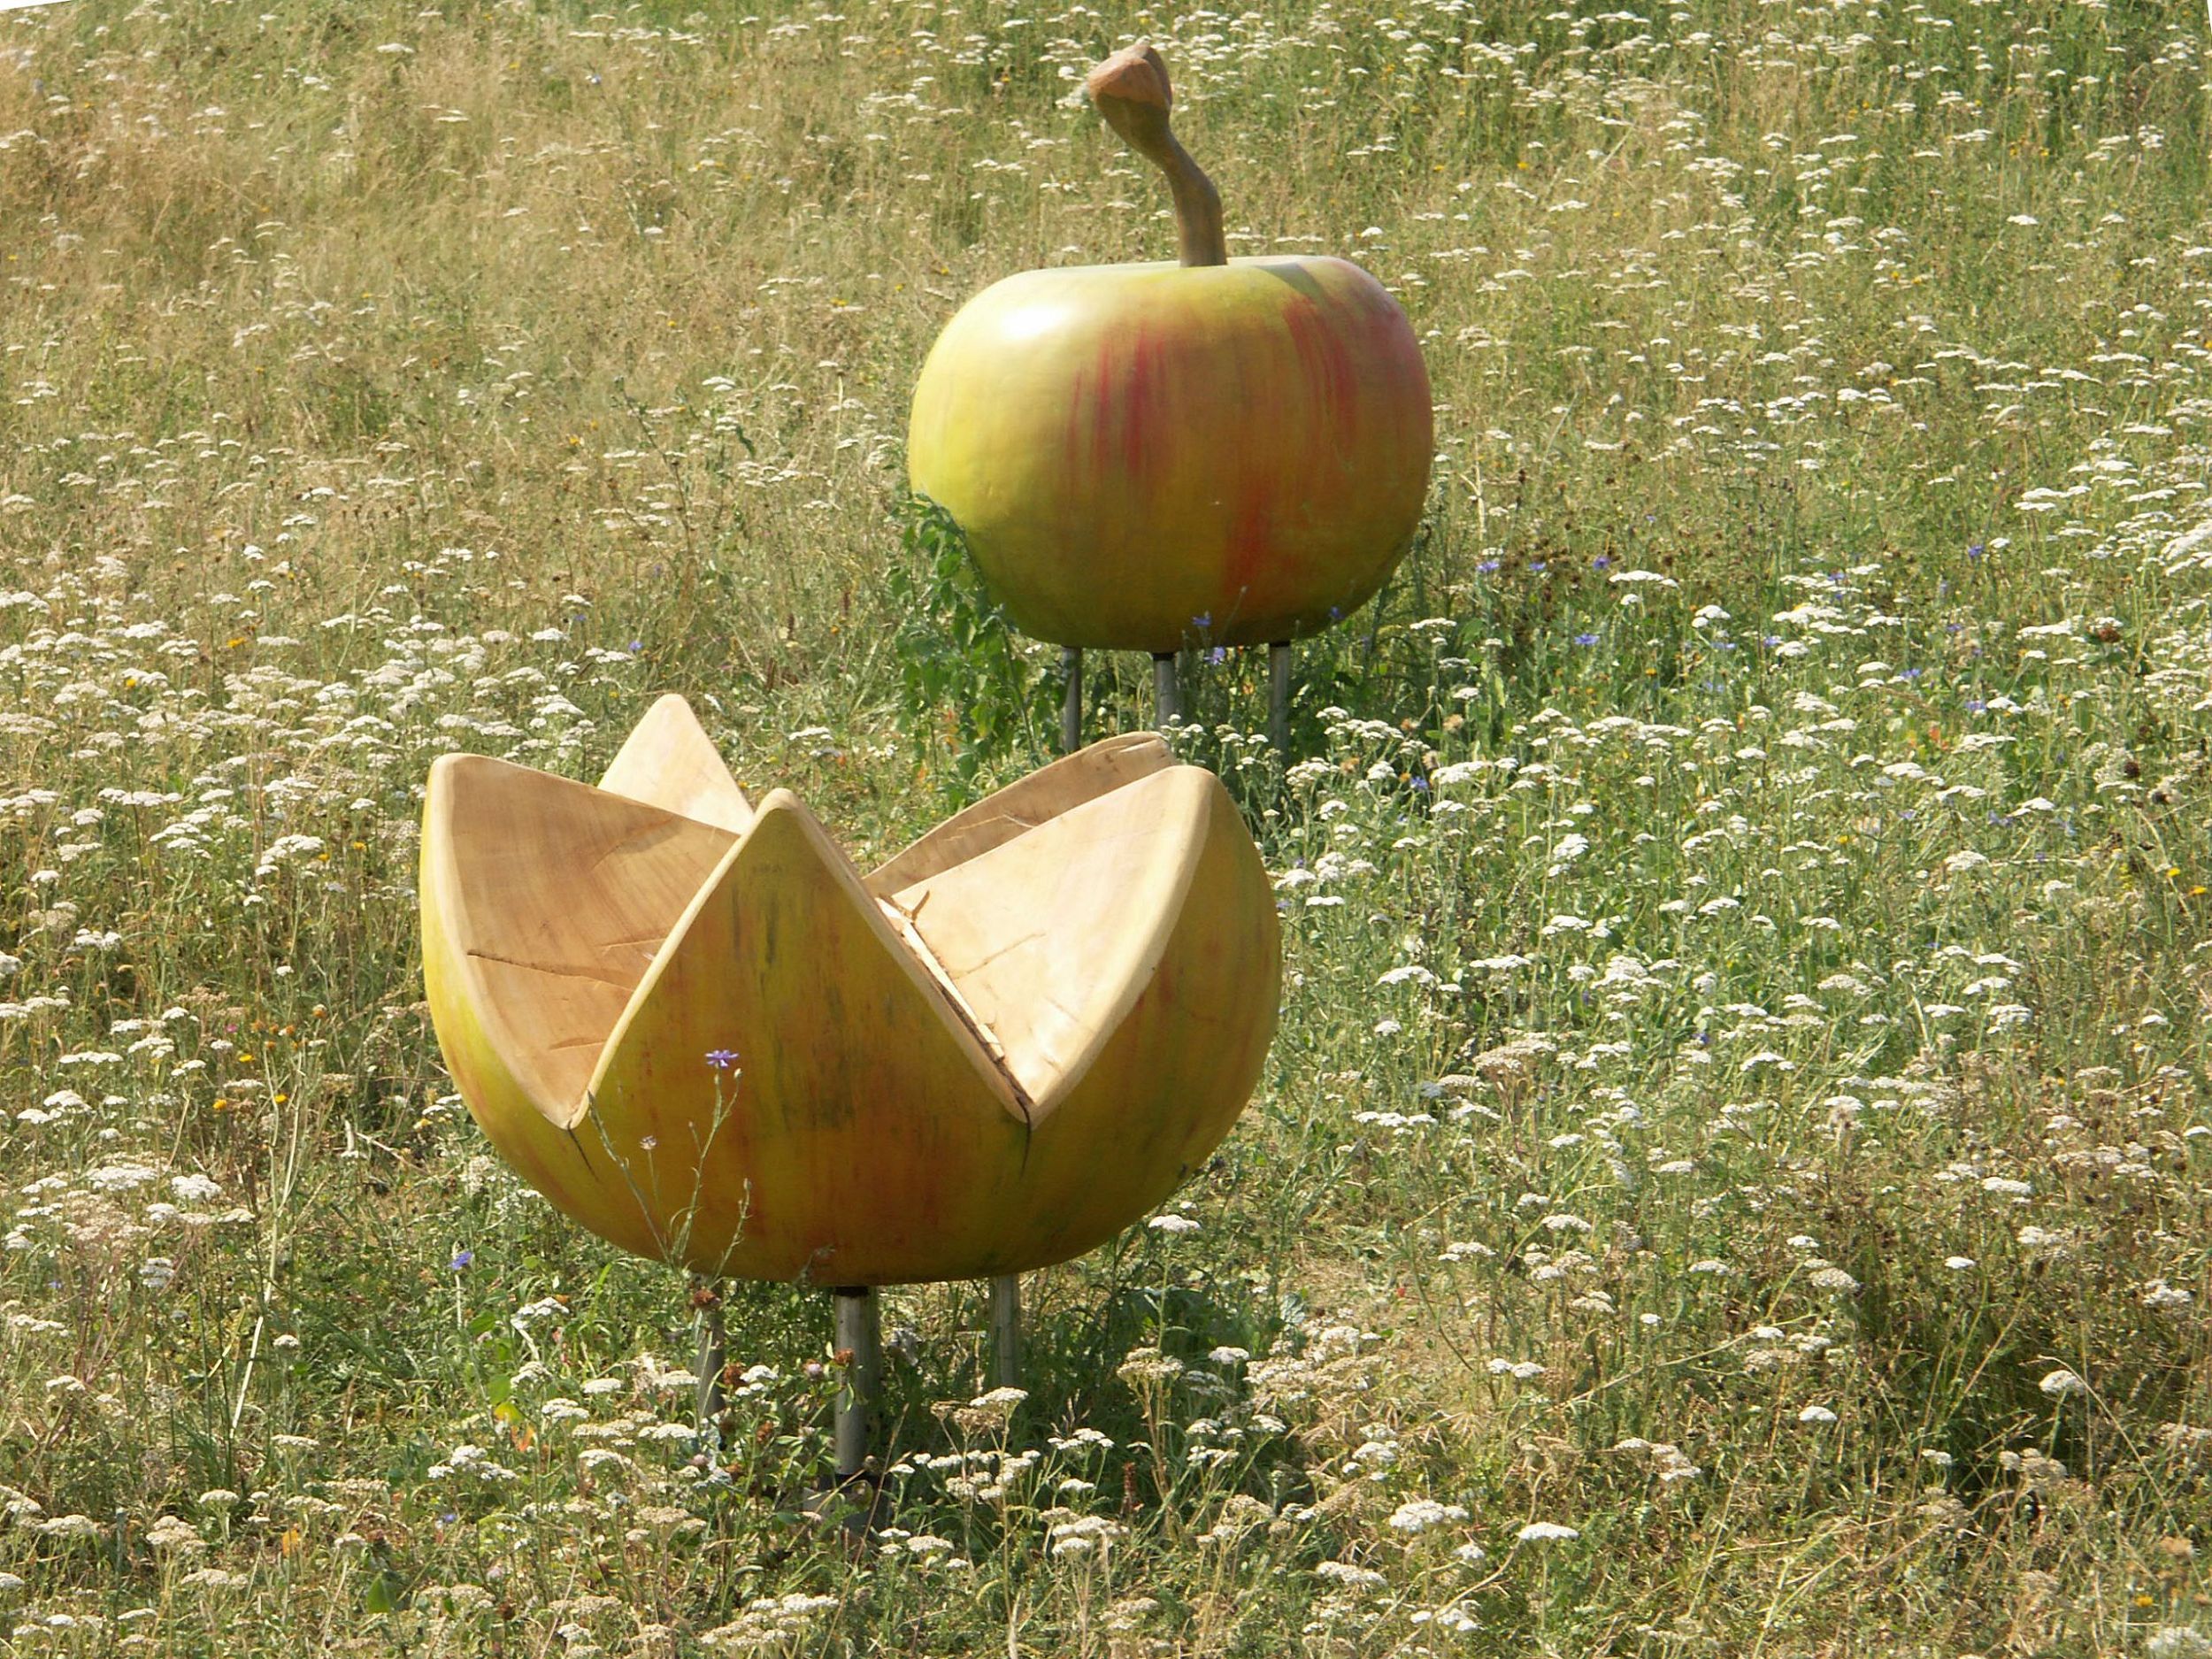 Foto: Spielgerät Wackelapfel in der Blumenwiese, Foto: ver.de landschaftsarchitektur